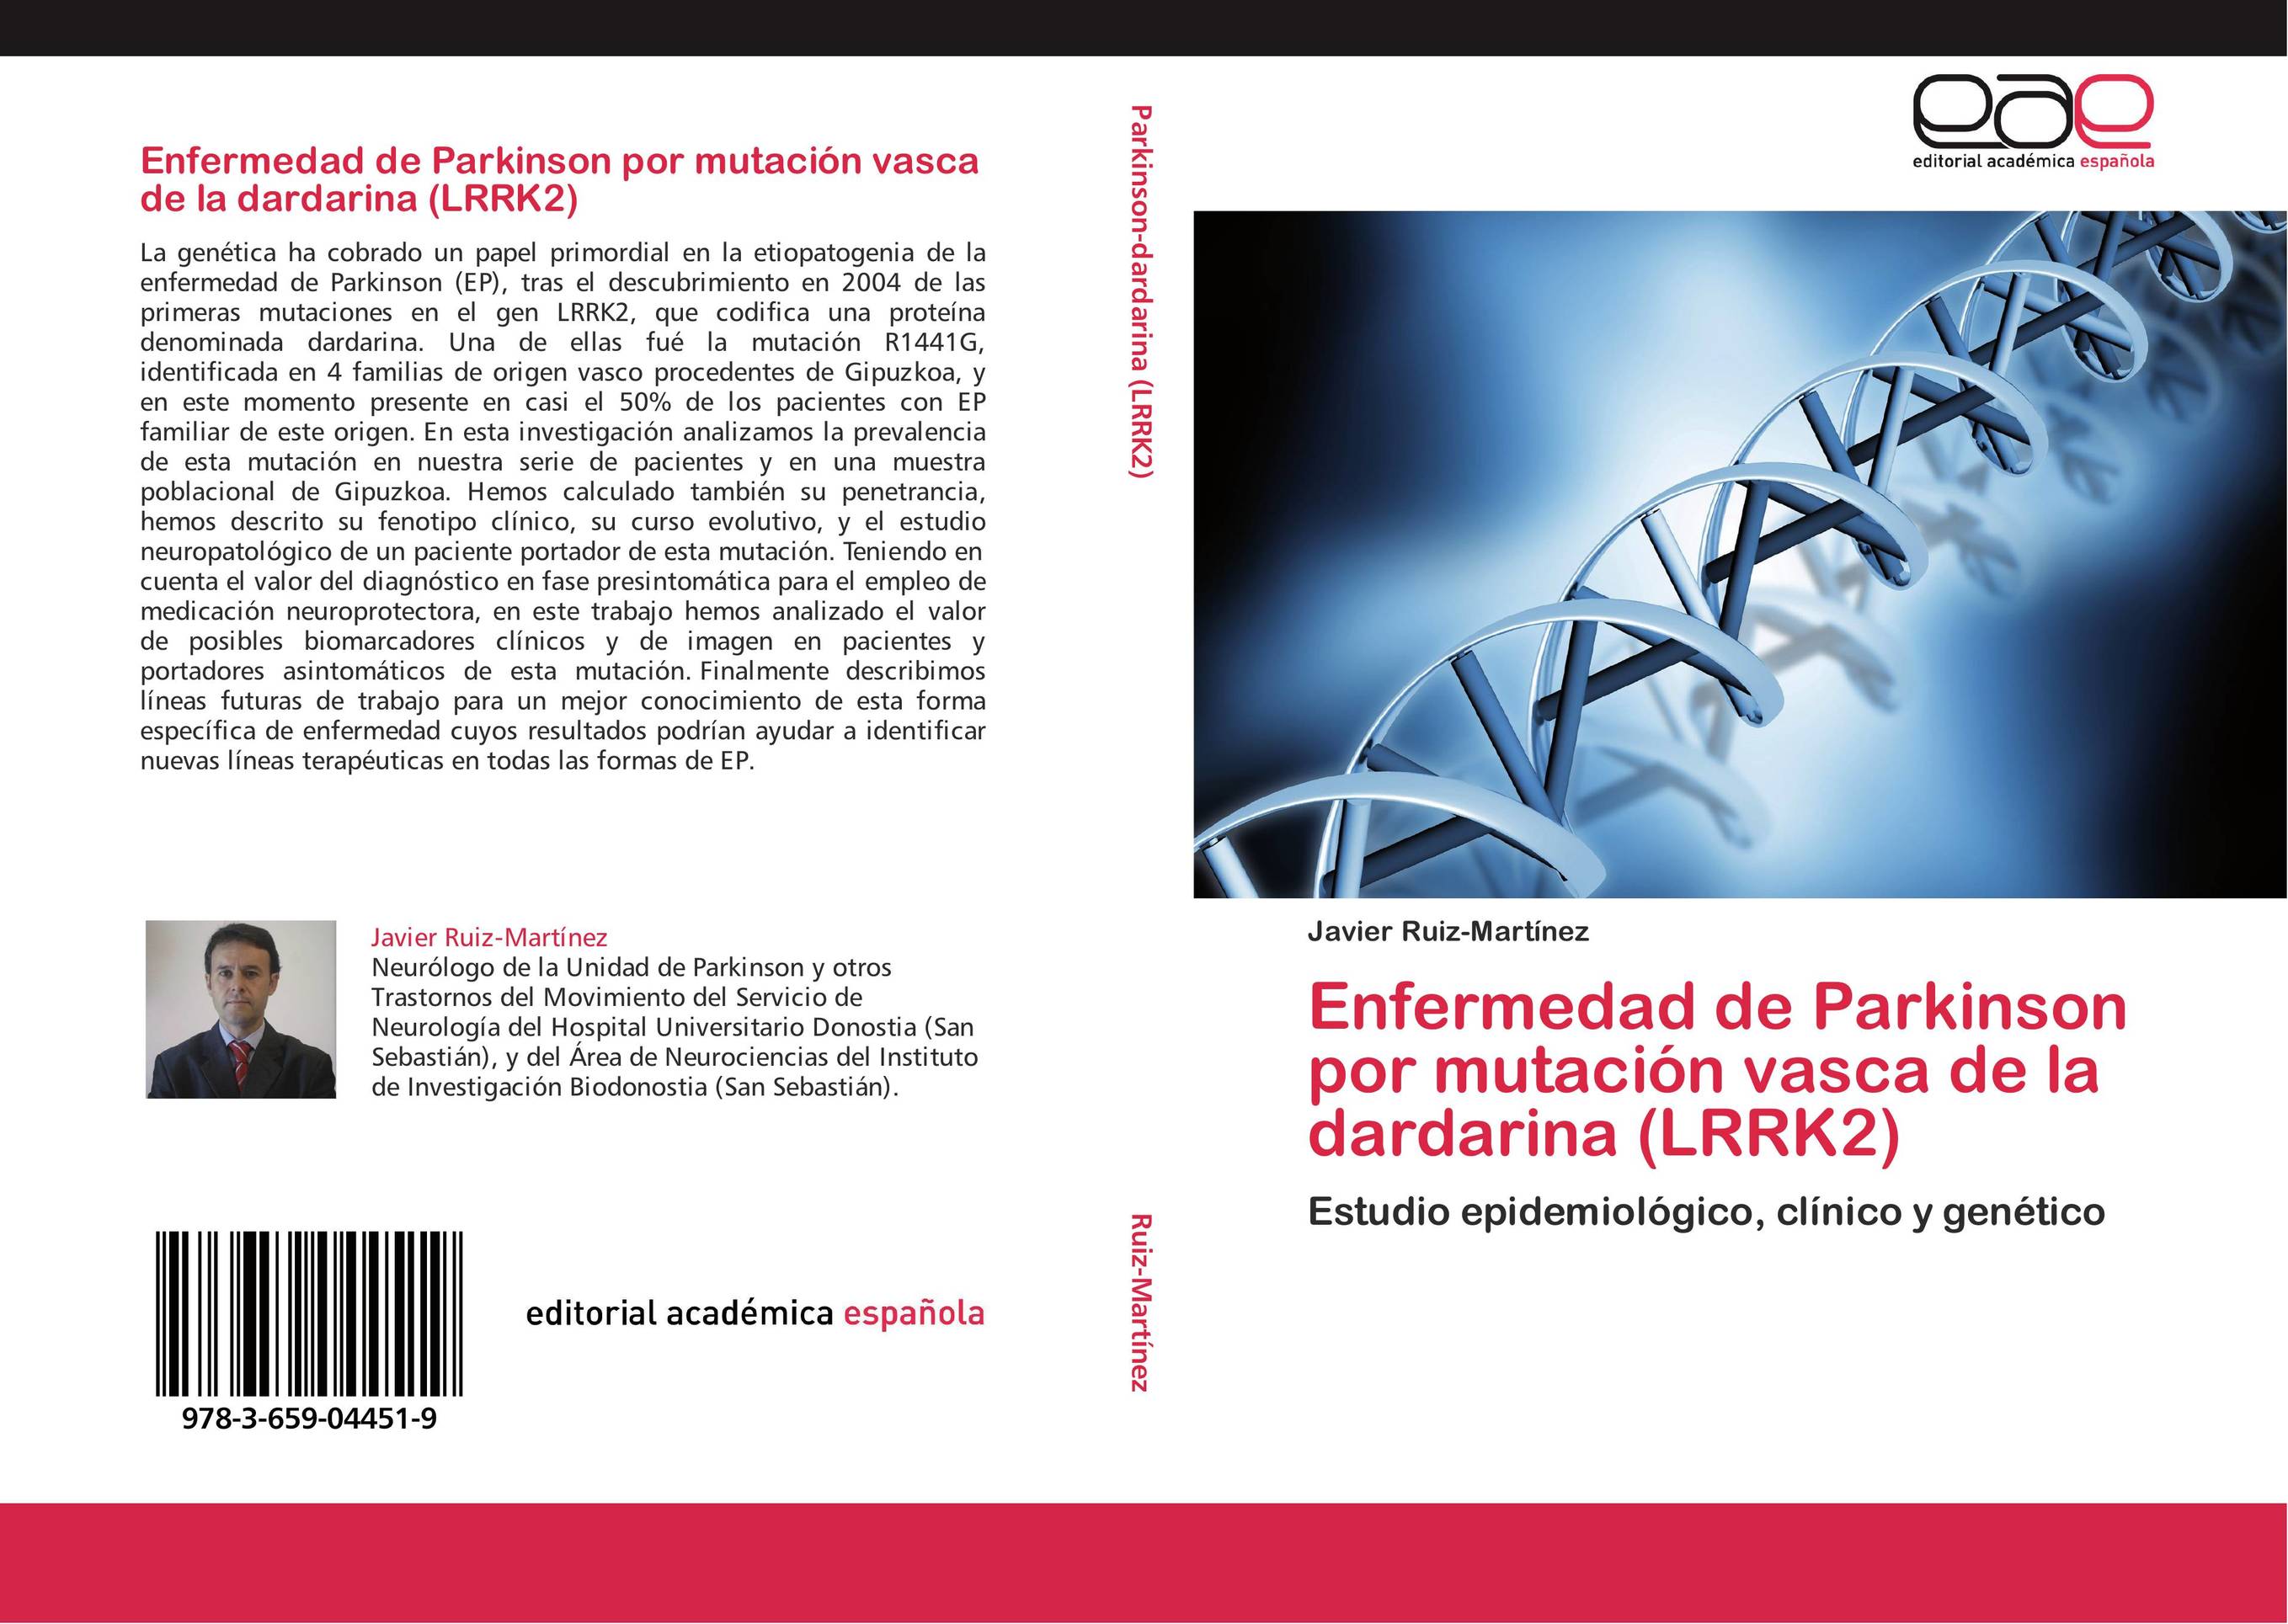 Enfermedad de Parkinson por mutación vasca de la dardarina (LRRK2)